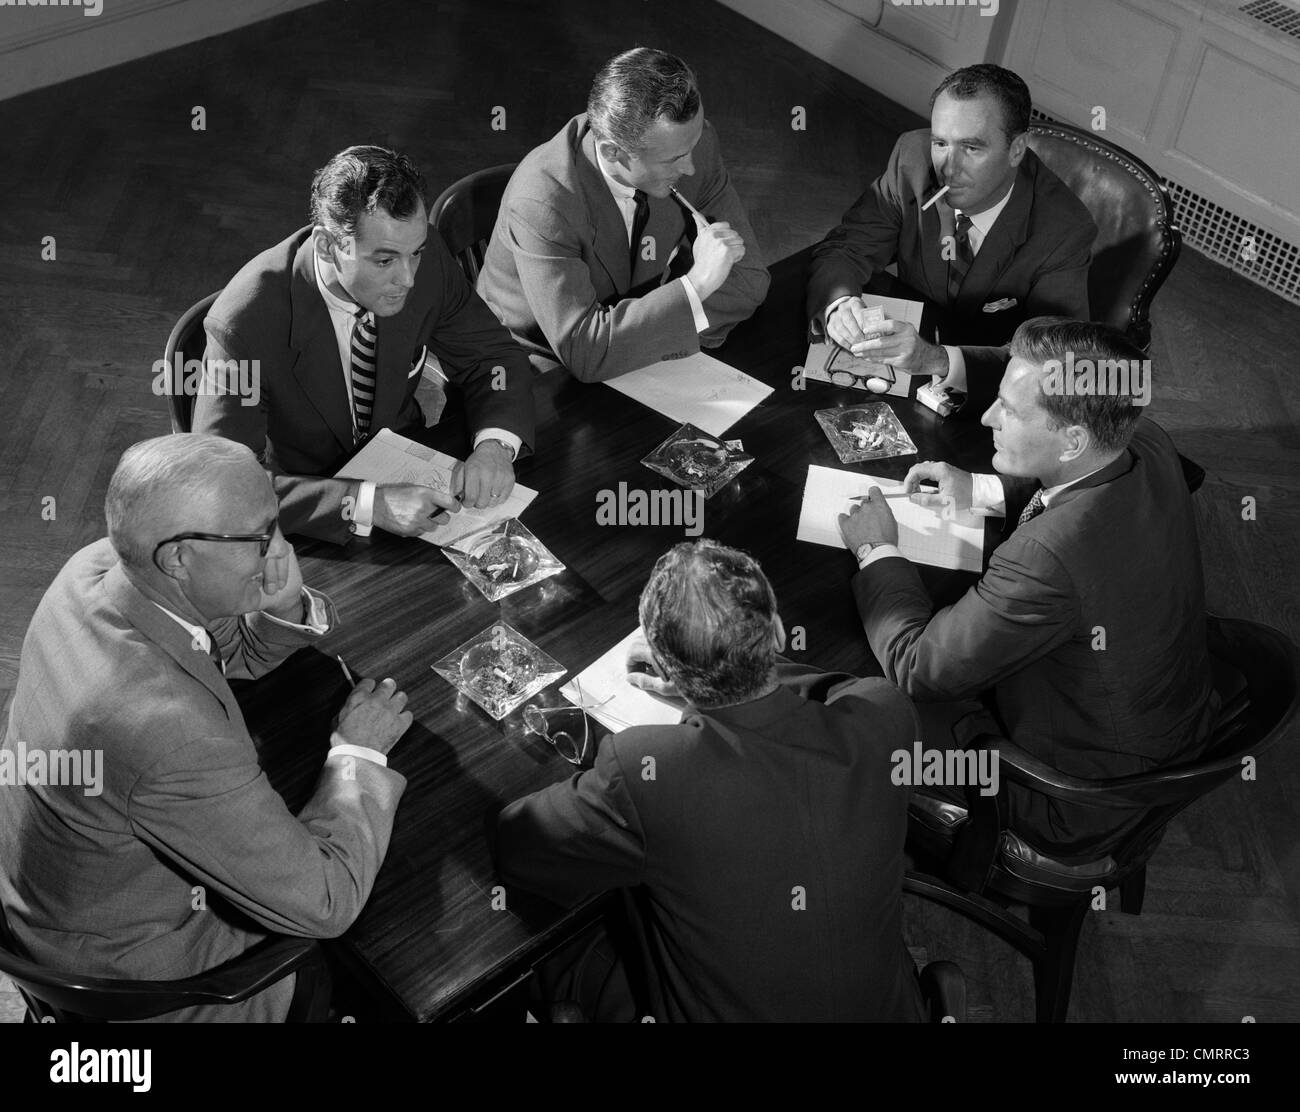 Années 50, GROUPE DE SIX HOMMES PARLER AUTOUR D'UNE TABLE DE CONFÉRENCE Banque D'Images